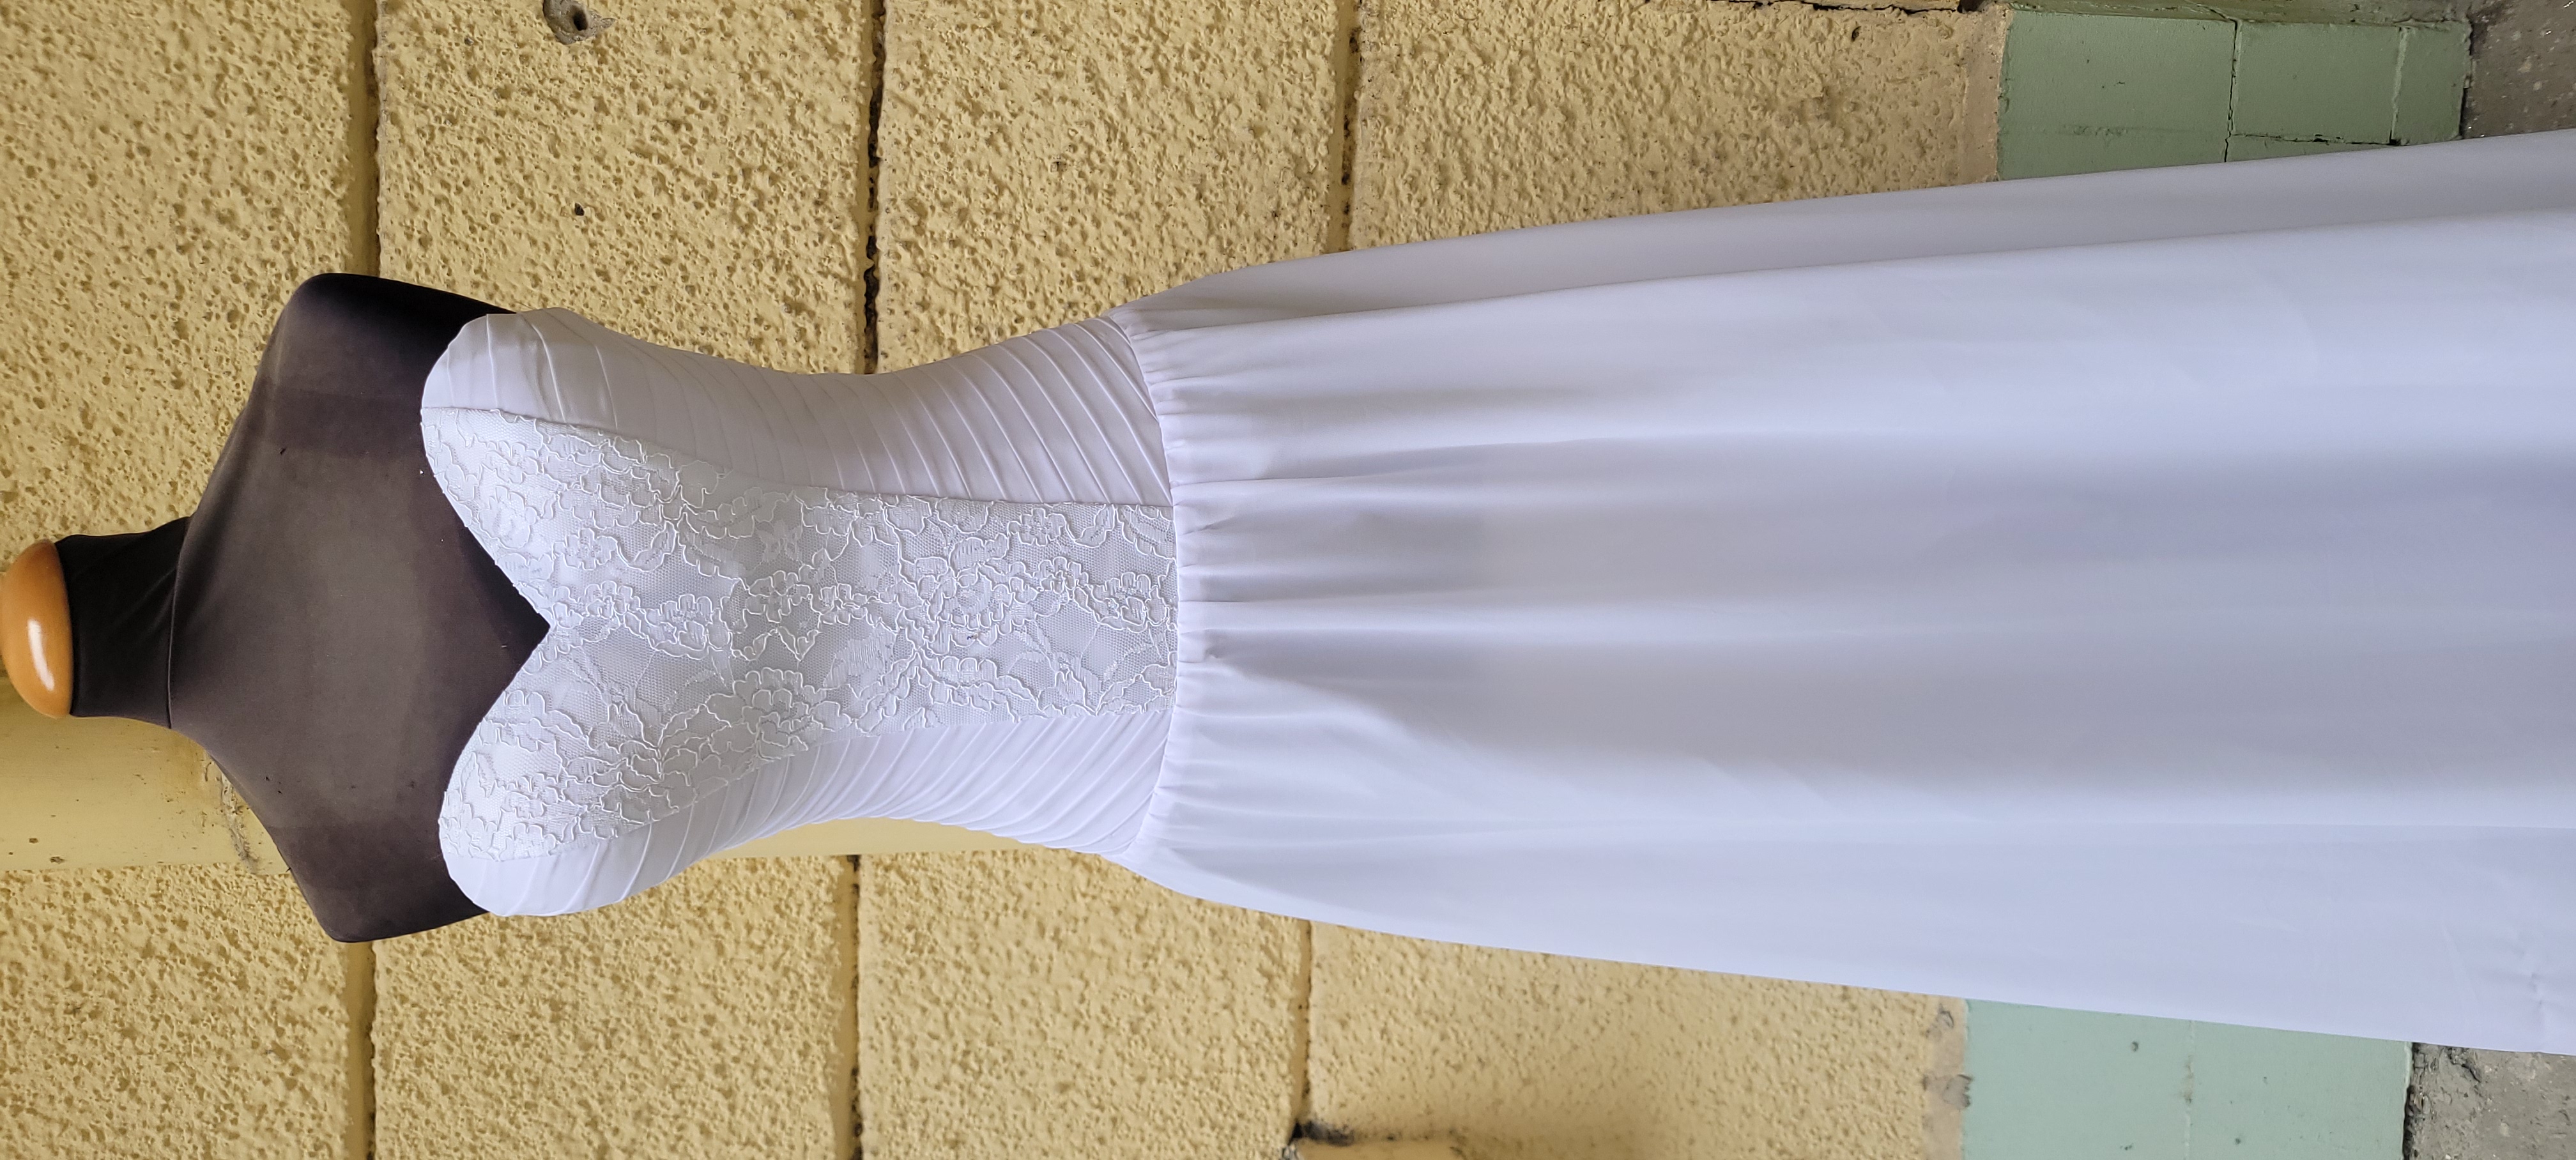 Új feher menyasszonyi ruha akciósan elasó